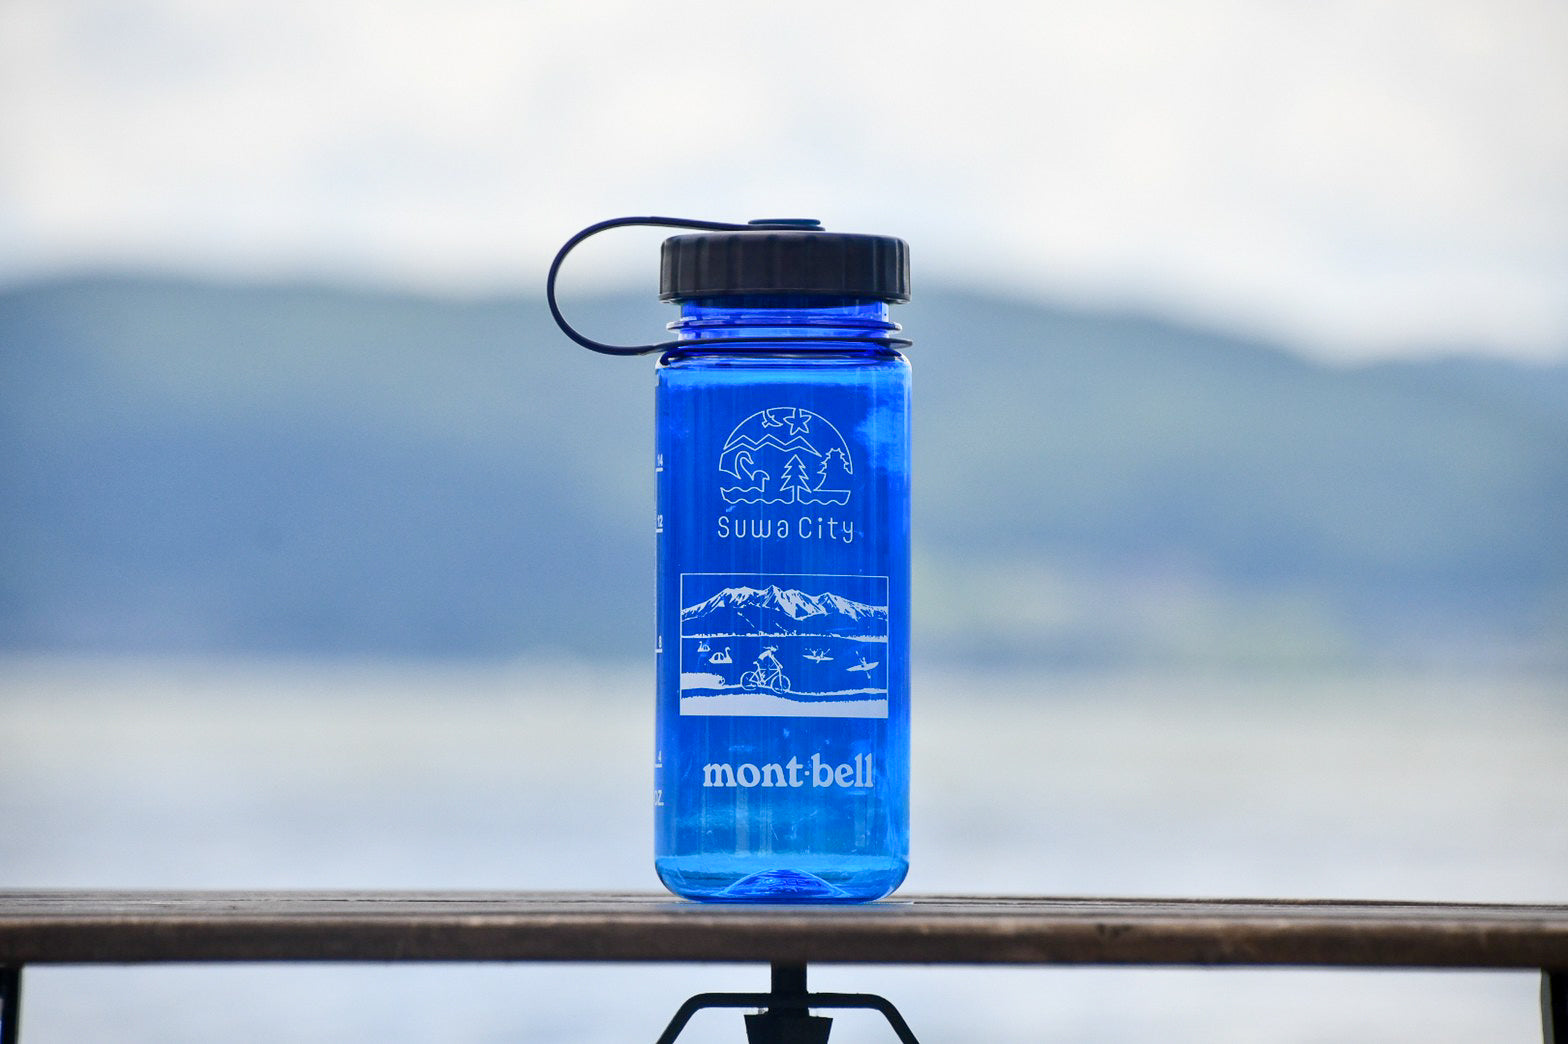 諏訪市 × mont-bell オリジナルクリアボトル – 諏訪湖クリーンプロジェクト